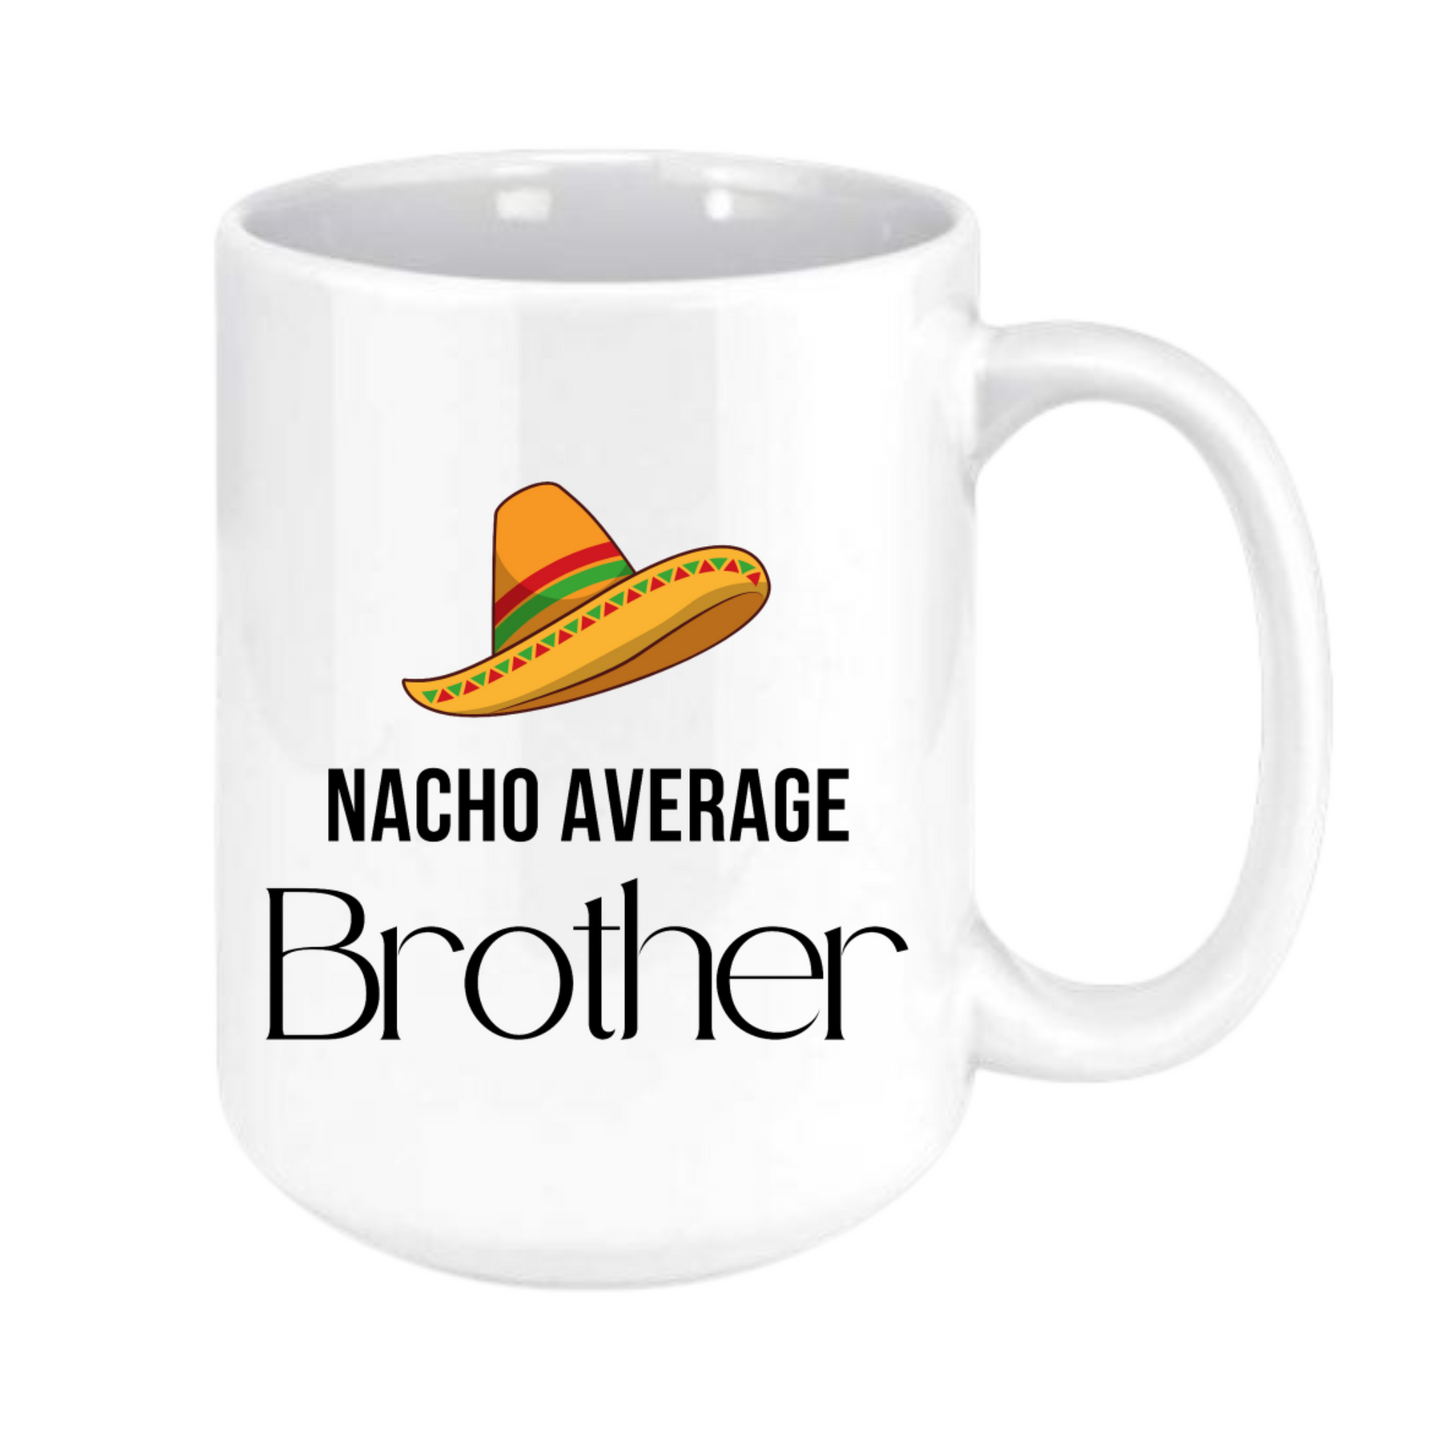 nacho average brother mug